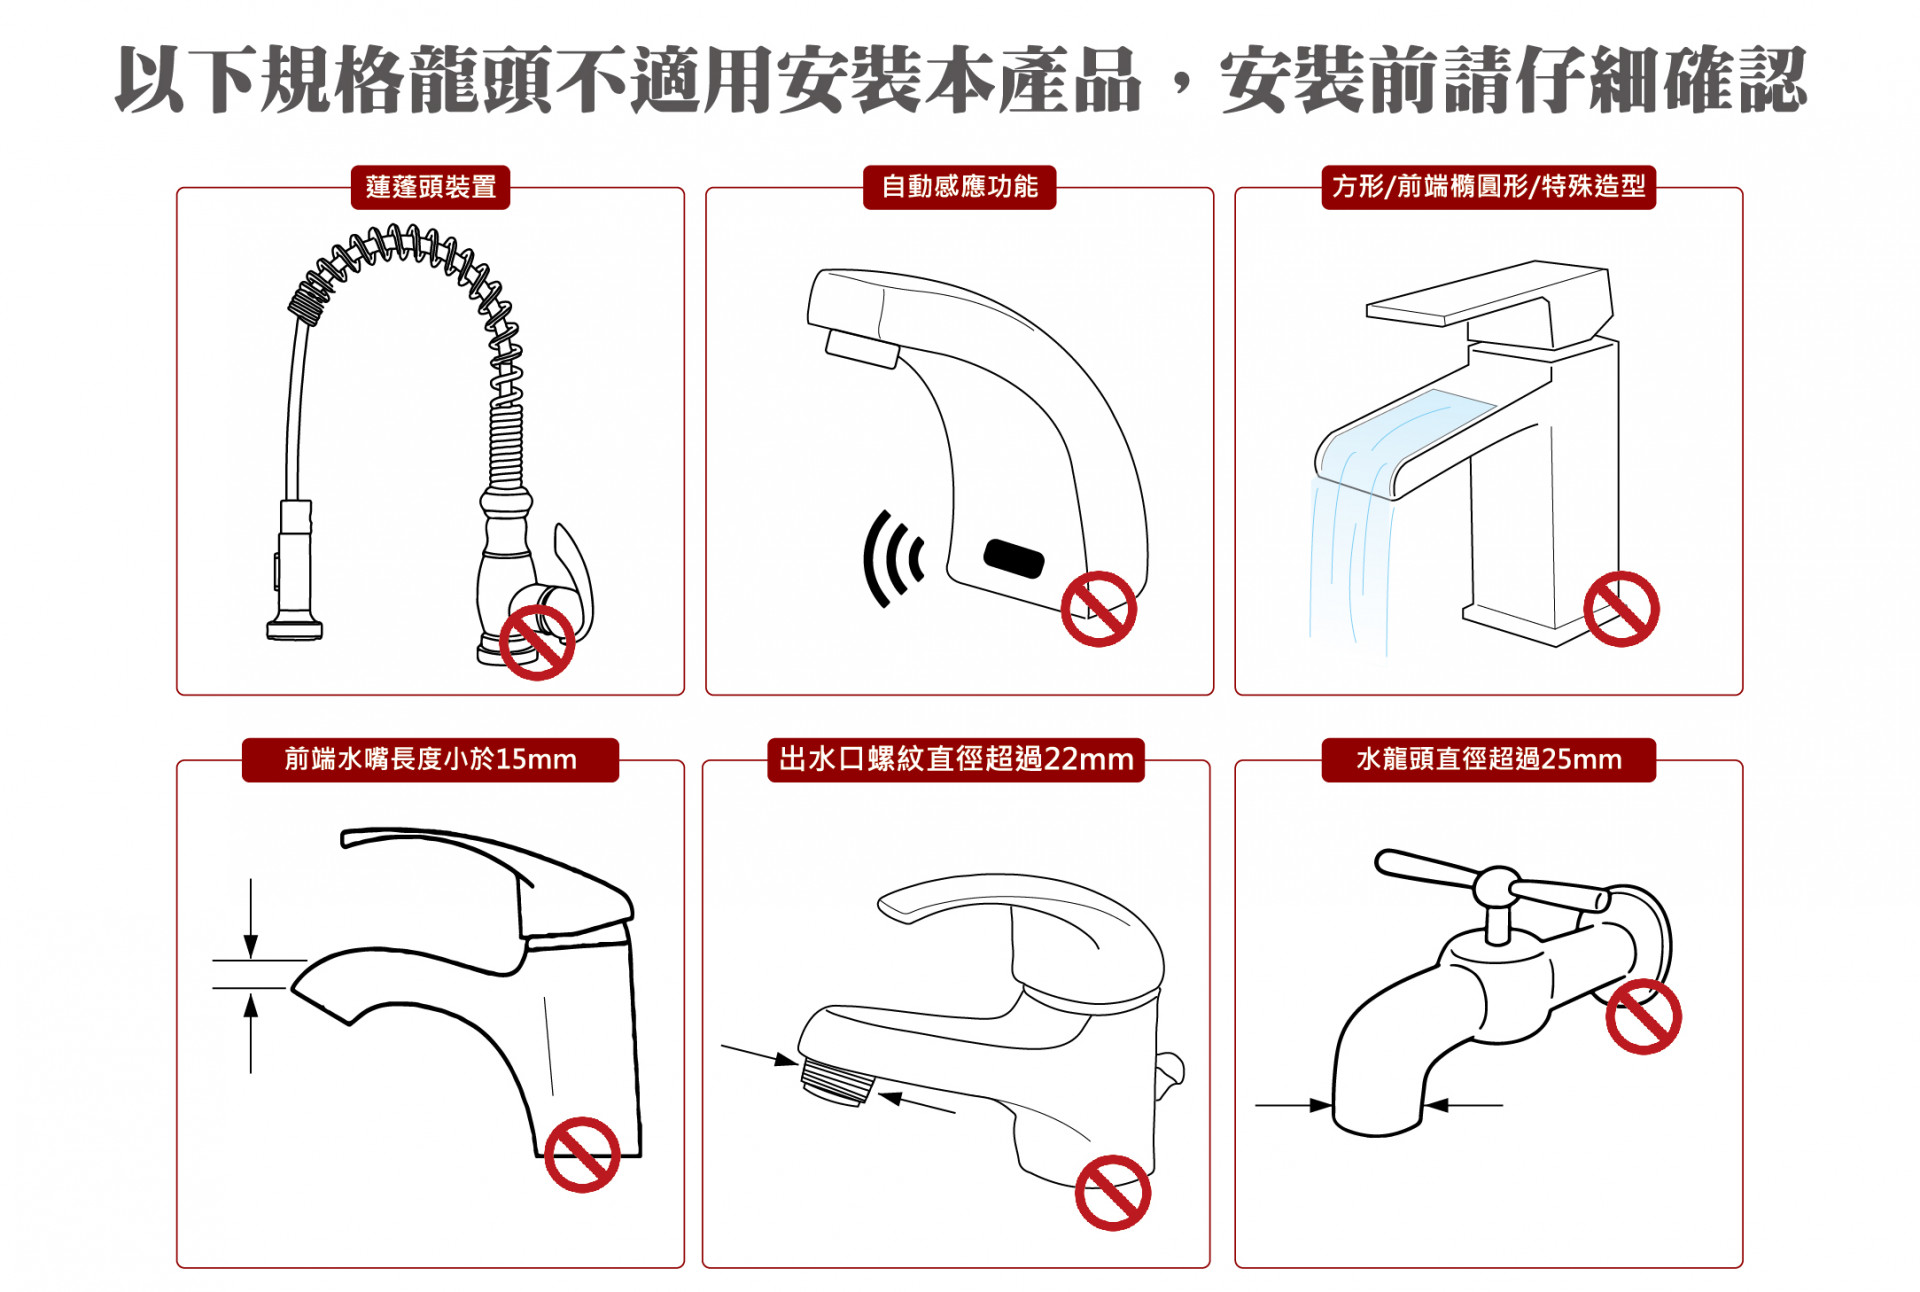 淨水器以下規格龍頭不適用安裝本產品安裝前請仔細確認